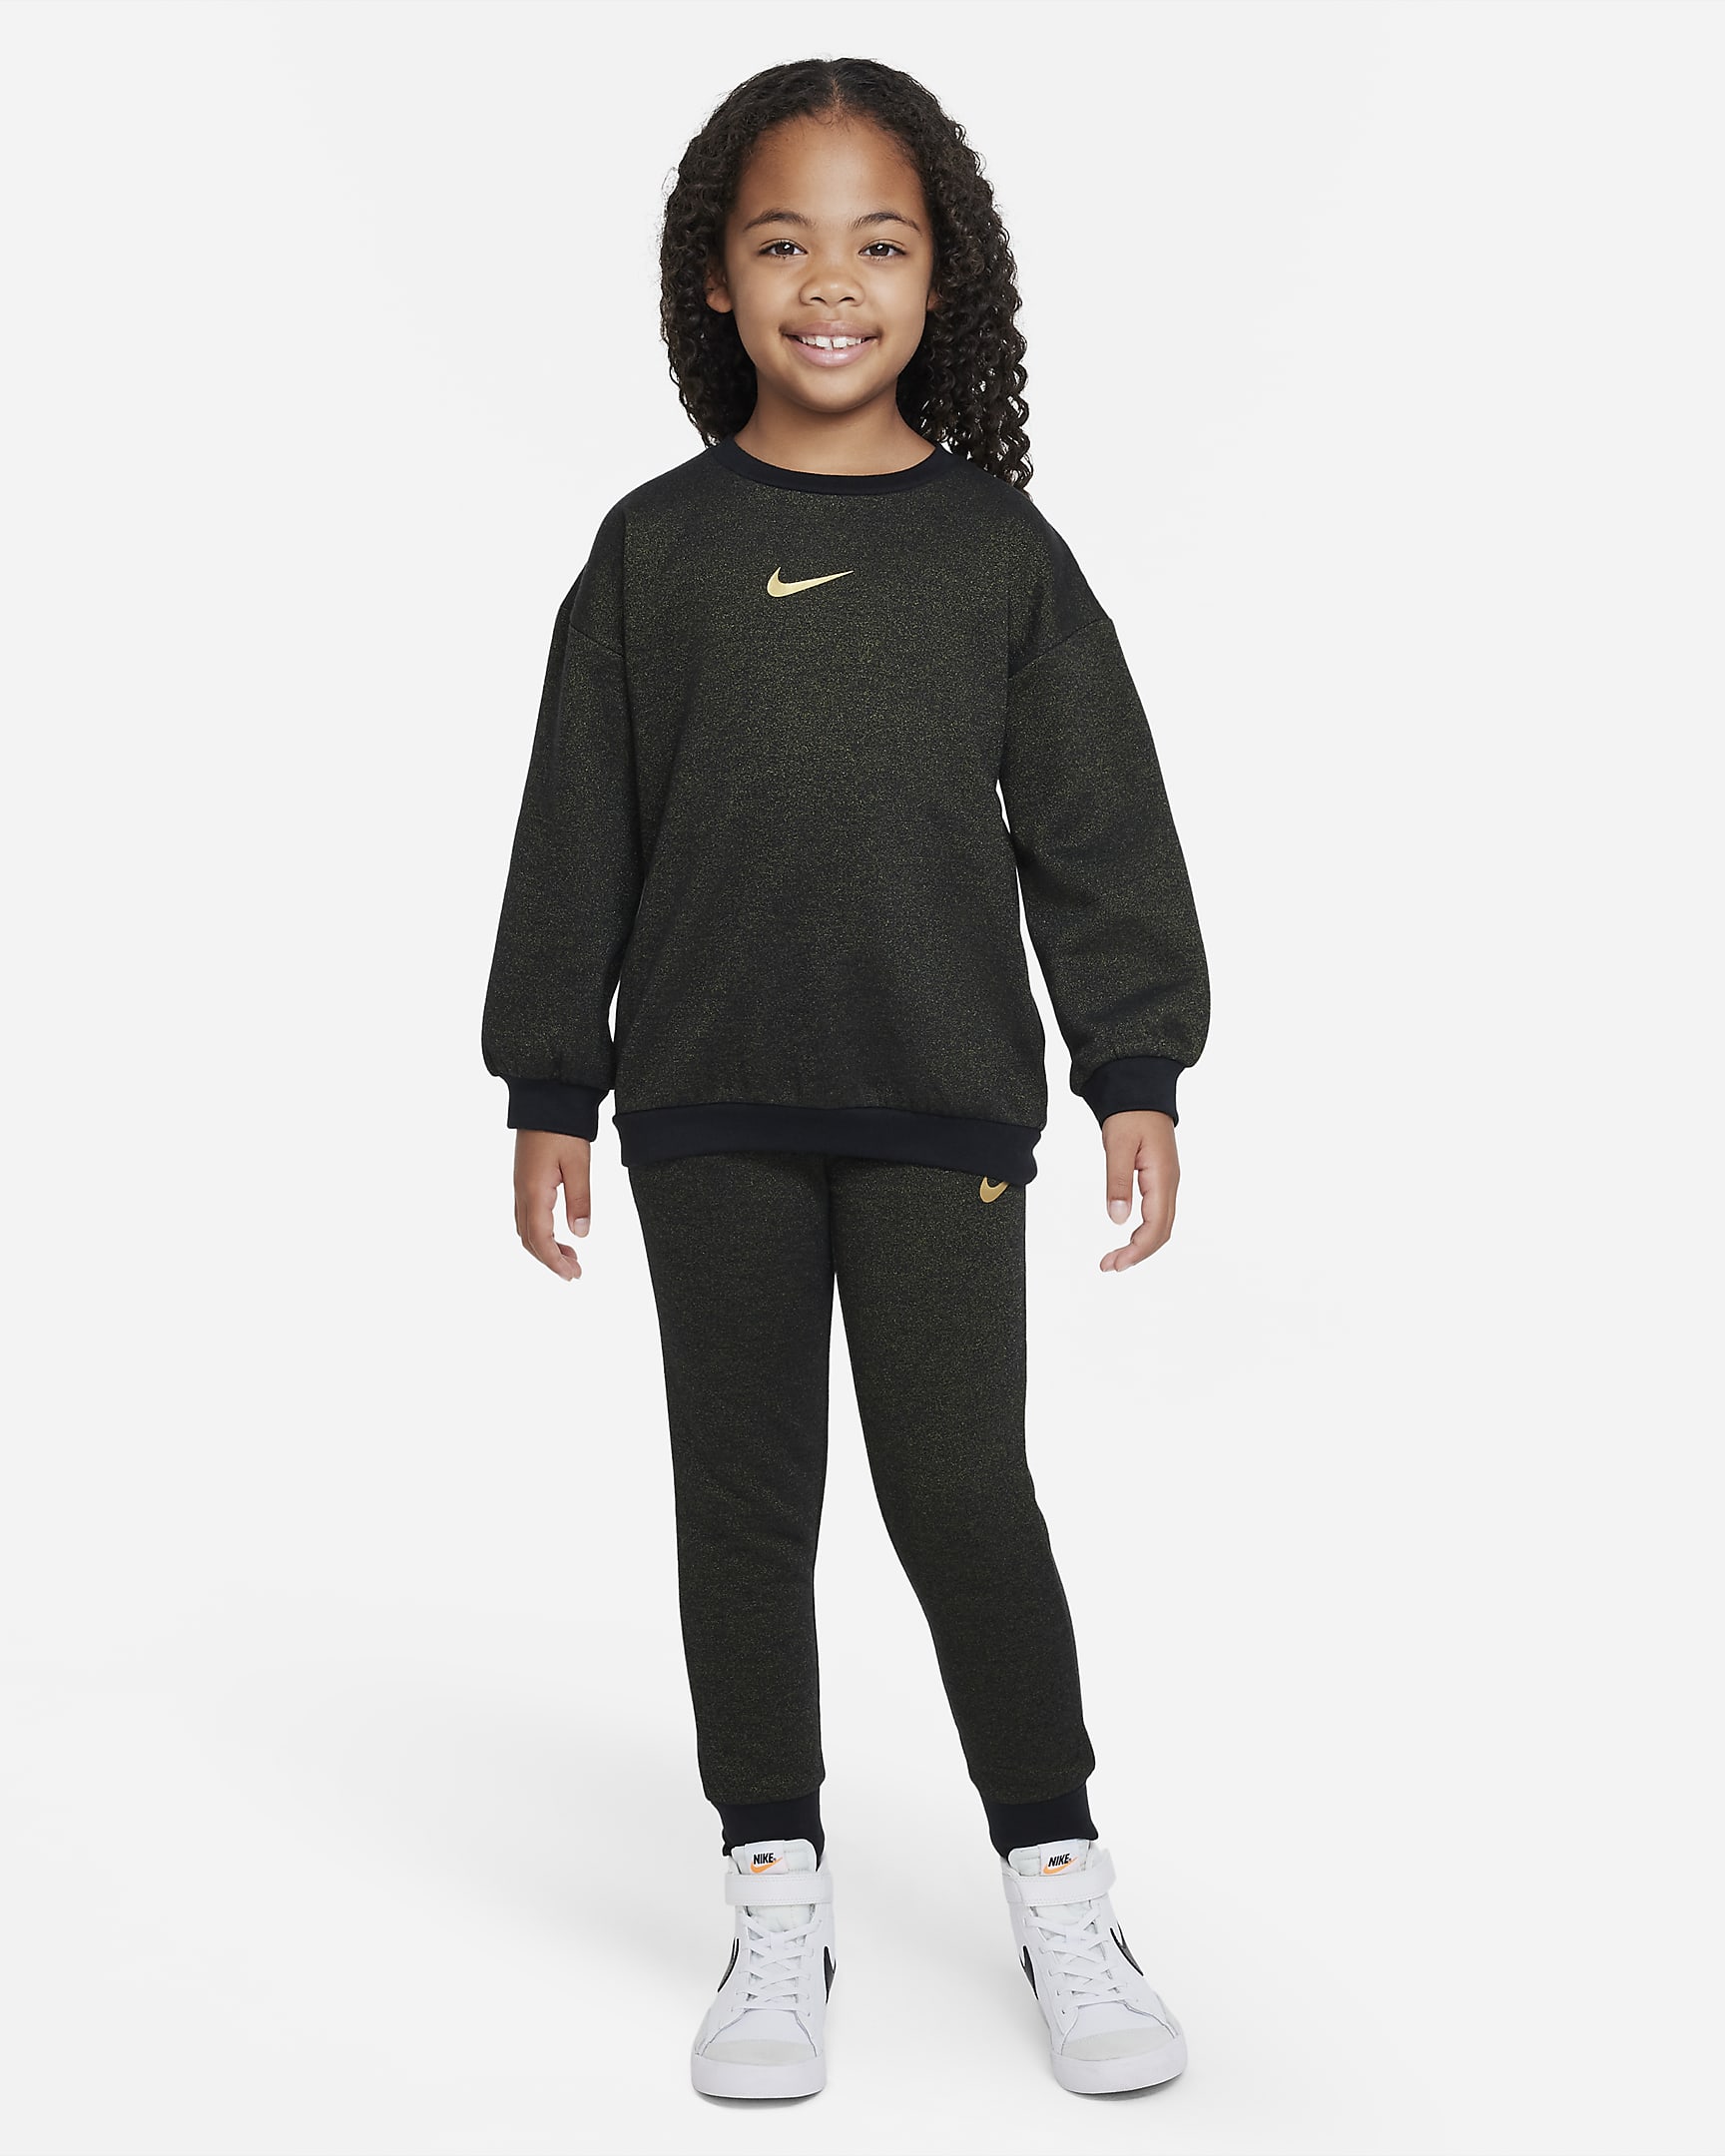 Nike Speckled Fleece Crew Little Kids' Crew. Nike JP